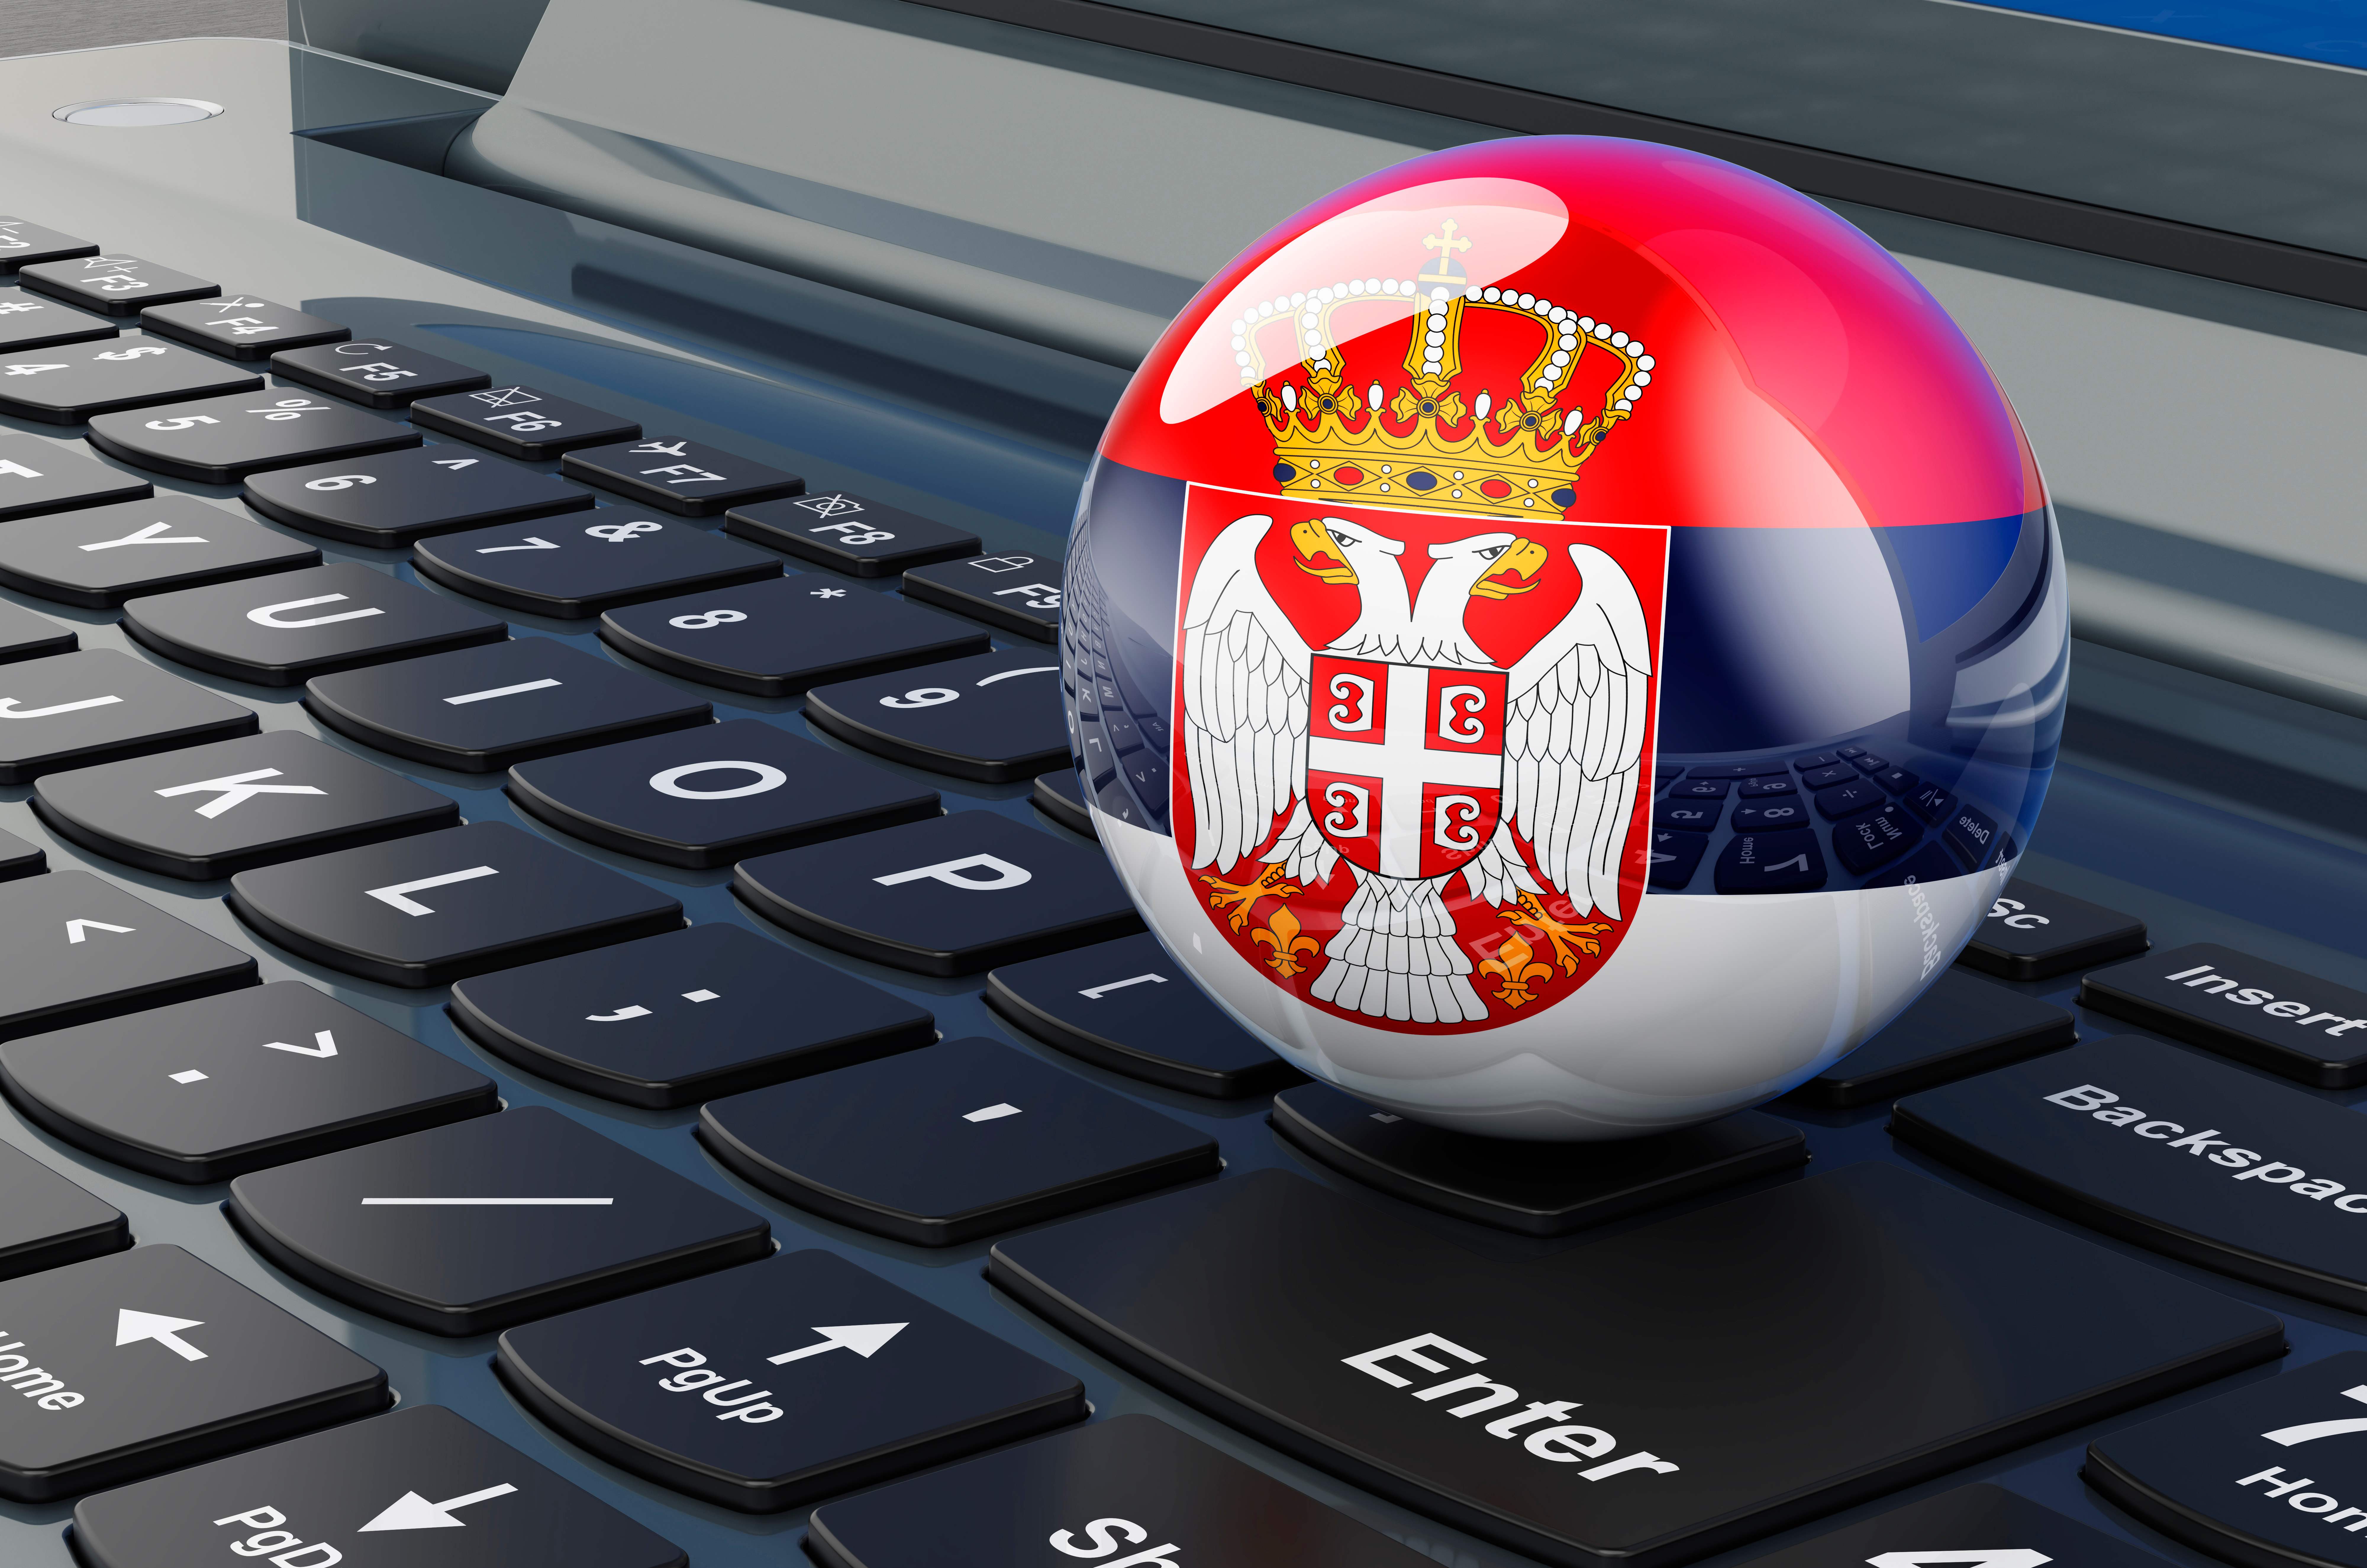 Клавиатура и флаг Сербии, работа в которой доступна для русских